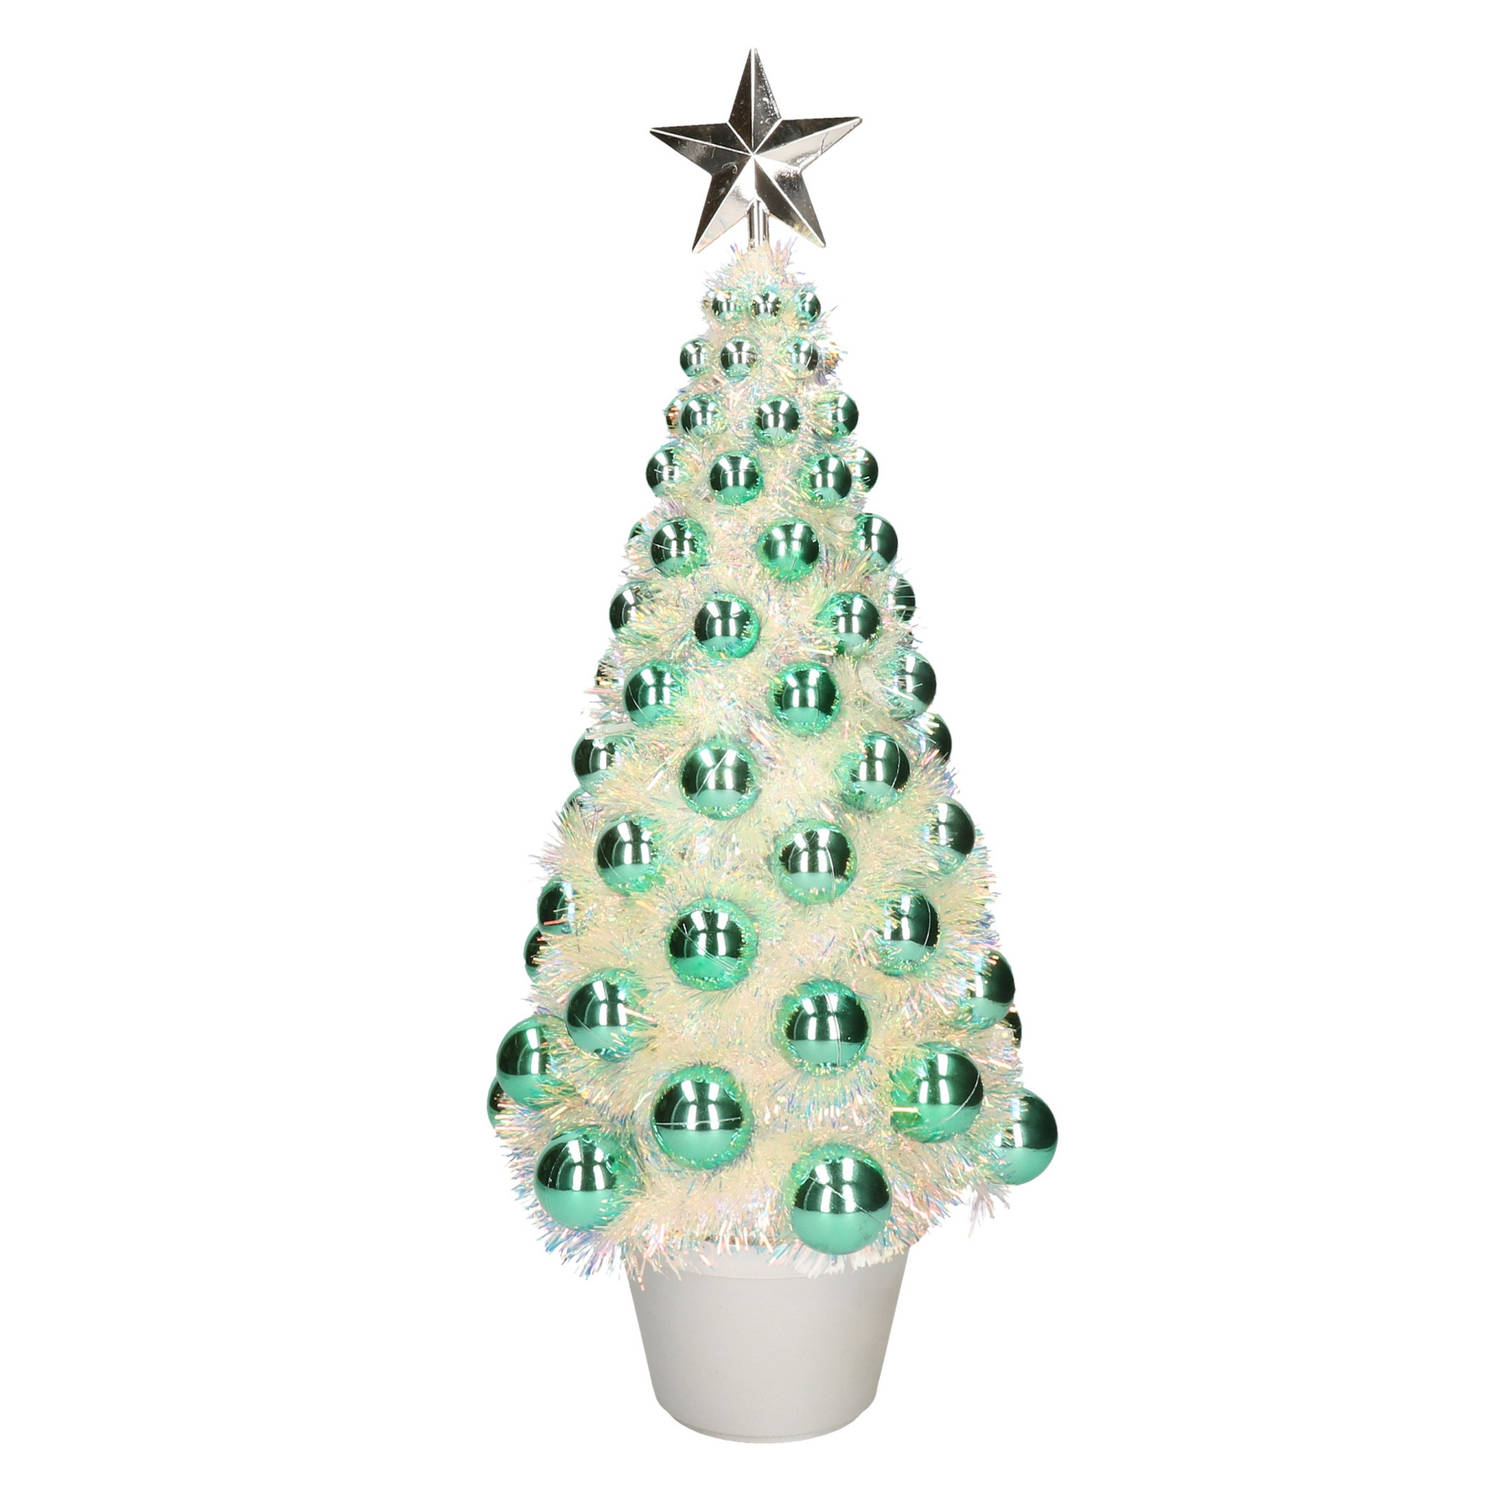 aanvaarden produceren alledaags Complete mini kunst kerstboom / kunstboom groen met lichtjes 50 cm -  Kunstkerstboom | Blokker